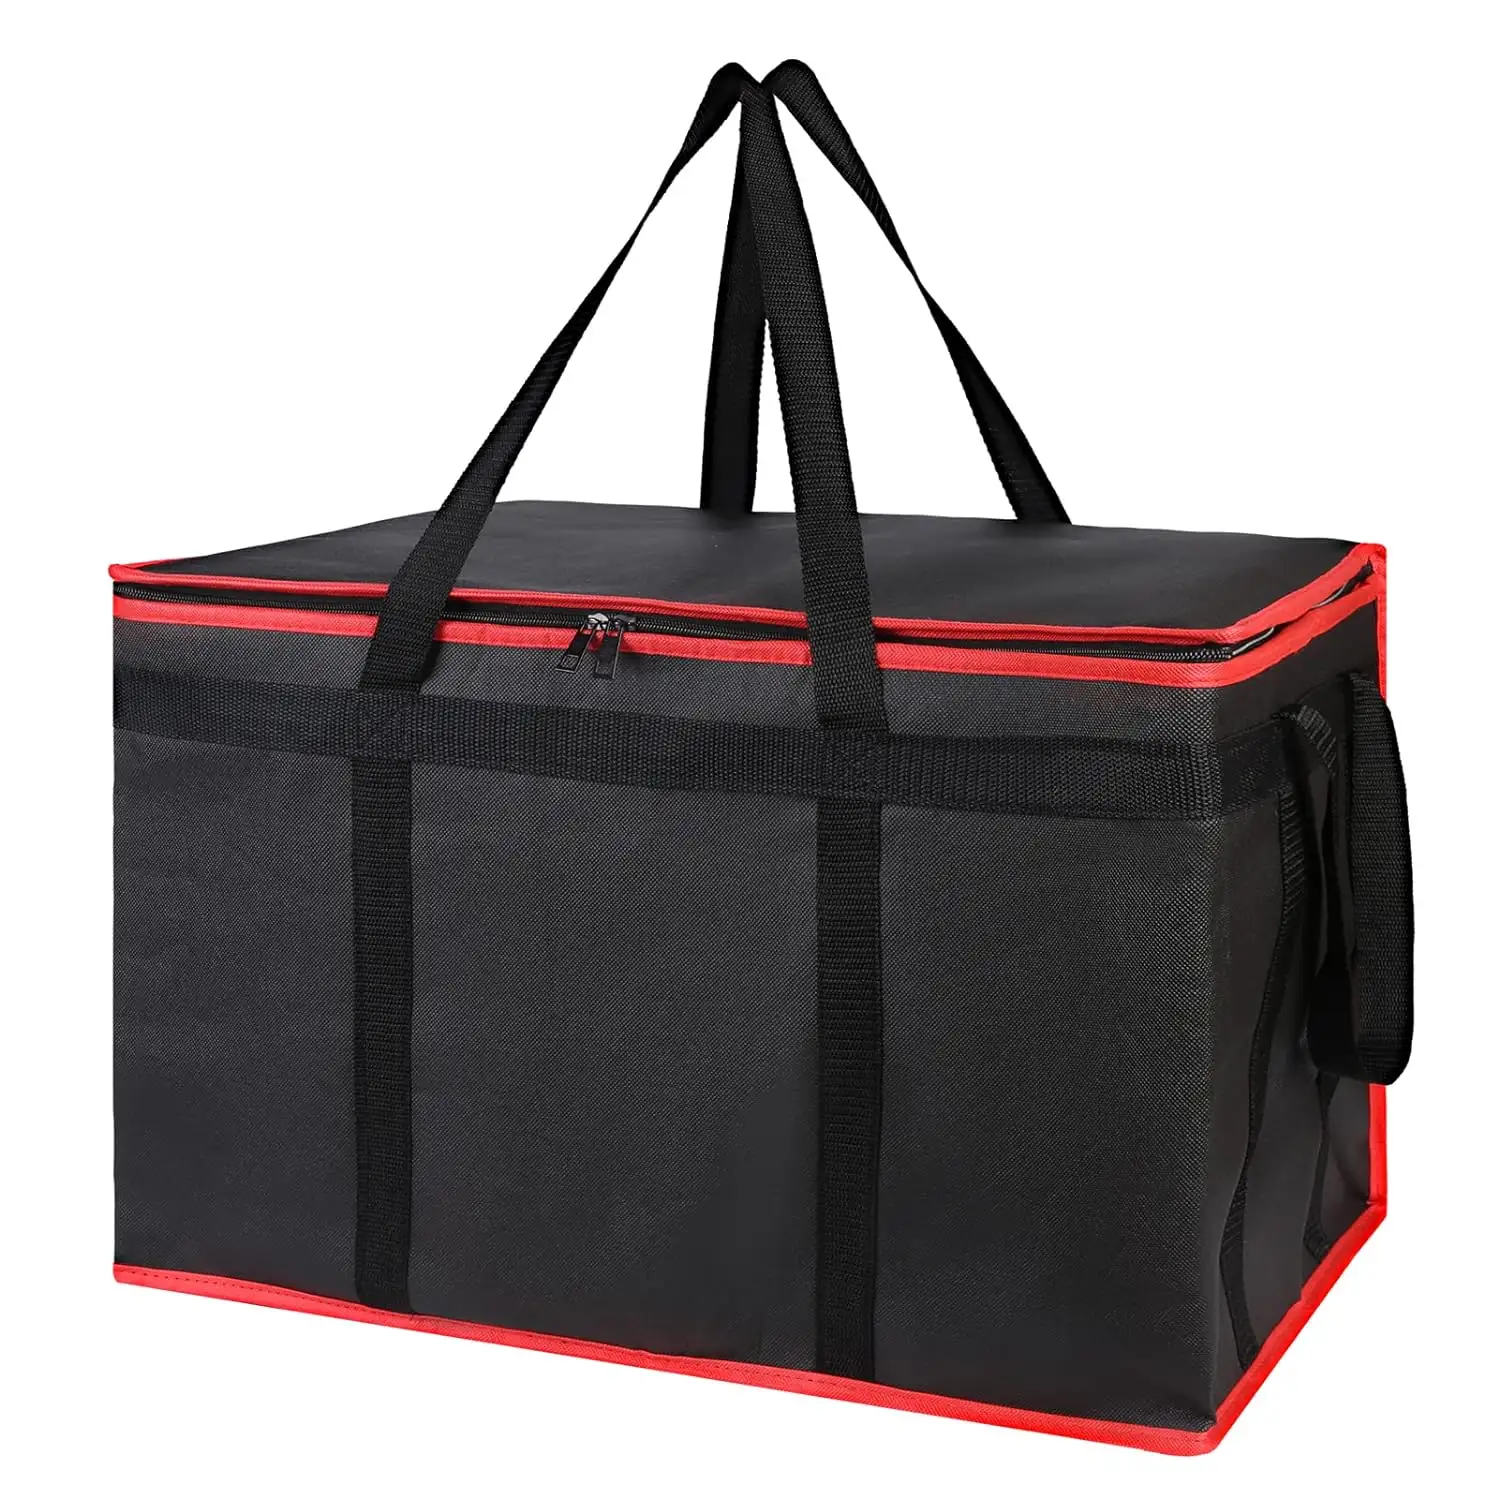 Wieder verwendbare wärme isolierte Kühltasche Lebensmittel Cool Carry Vlies Lunch Cooler Bag für Lebensmittel